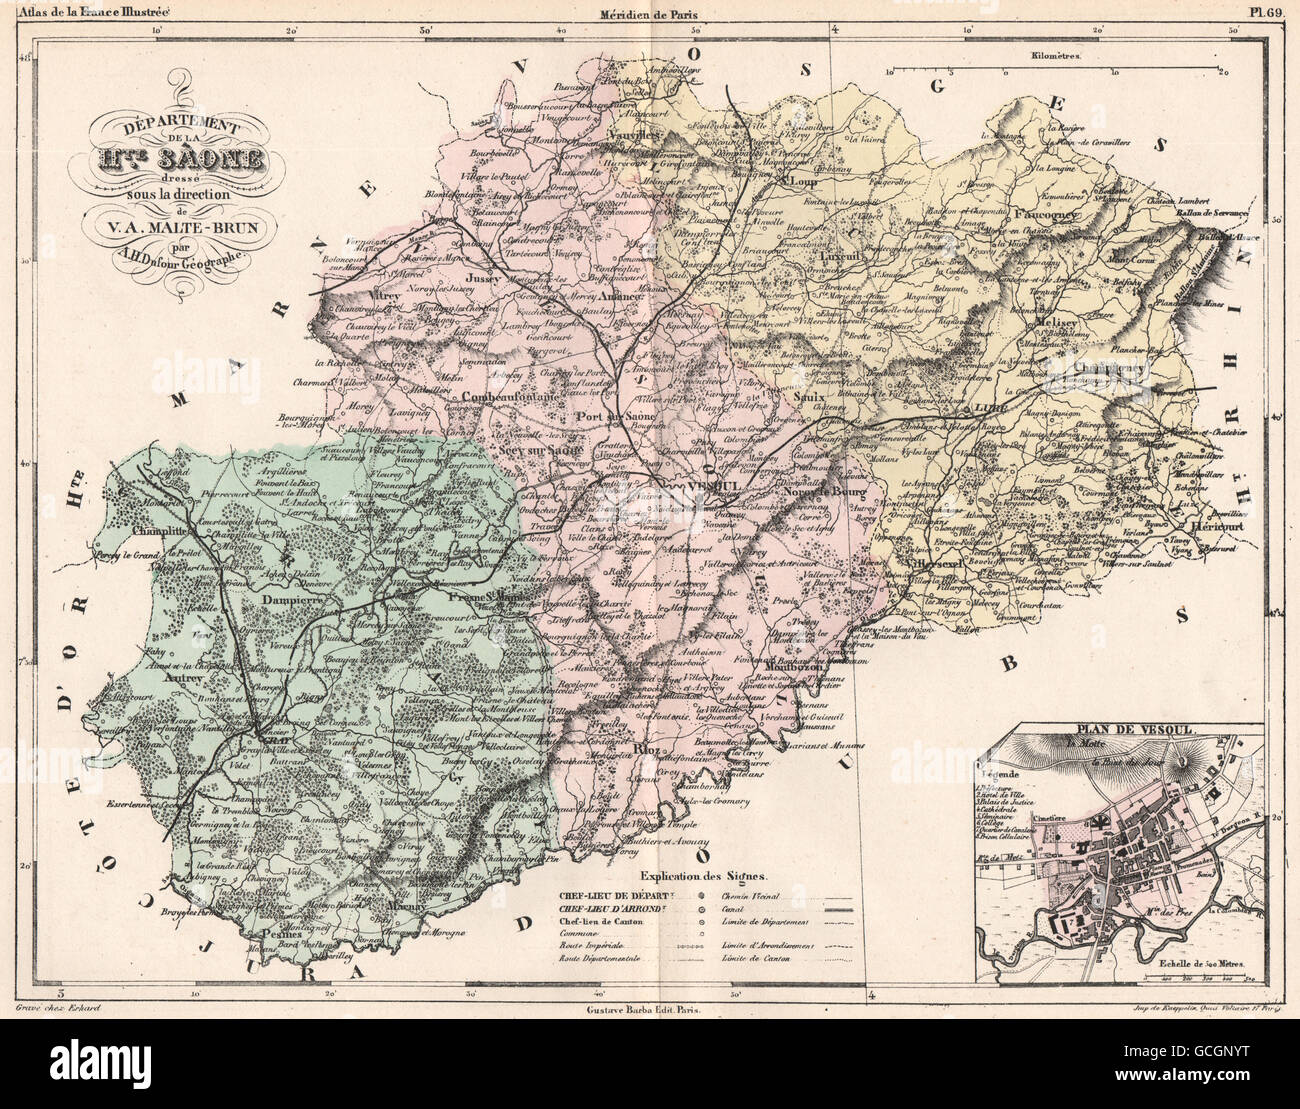 HAUTE-Saône. Carte du département. Saône. Plan de Vesoul. MALTE-BRUN, 1852 map Banque D'Images